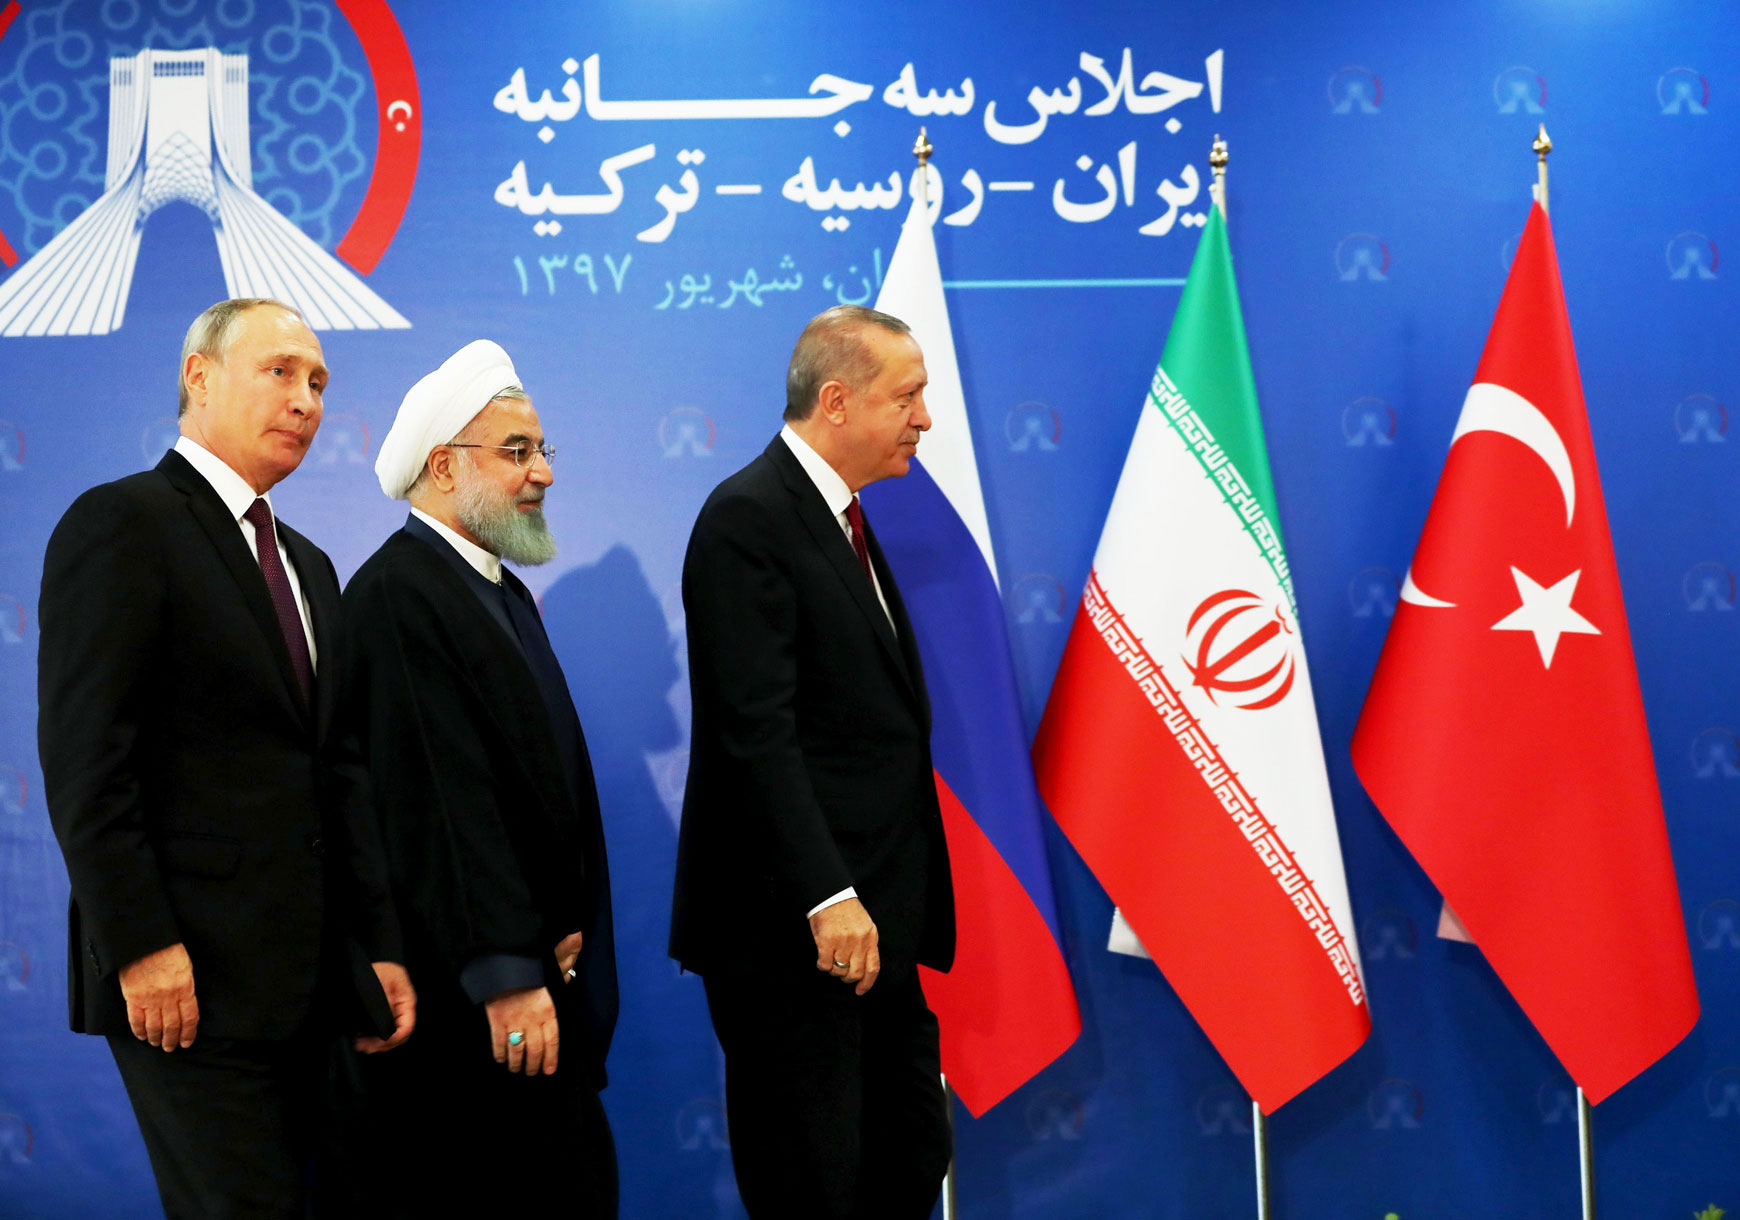 الرئيس التركي رجب طيب اردوغان يتقدم نظيريه الايراني حسن روحاني والروسي فلاديمير بوتين